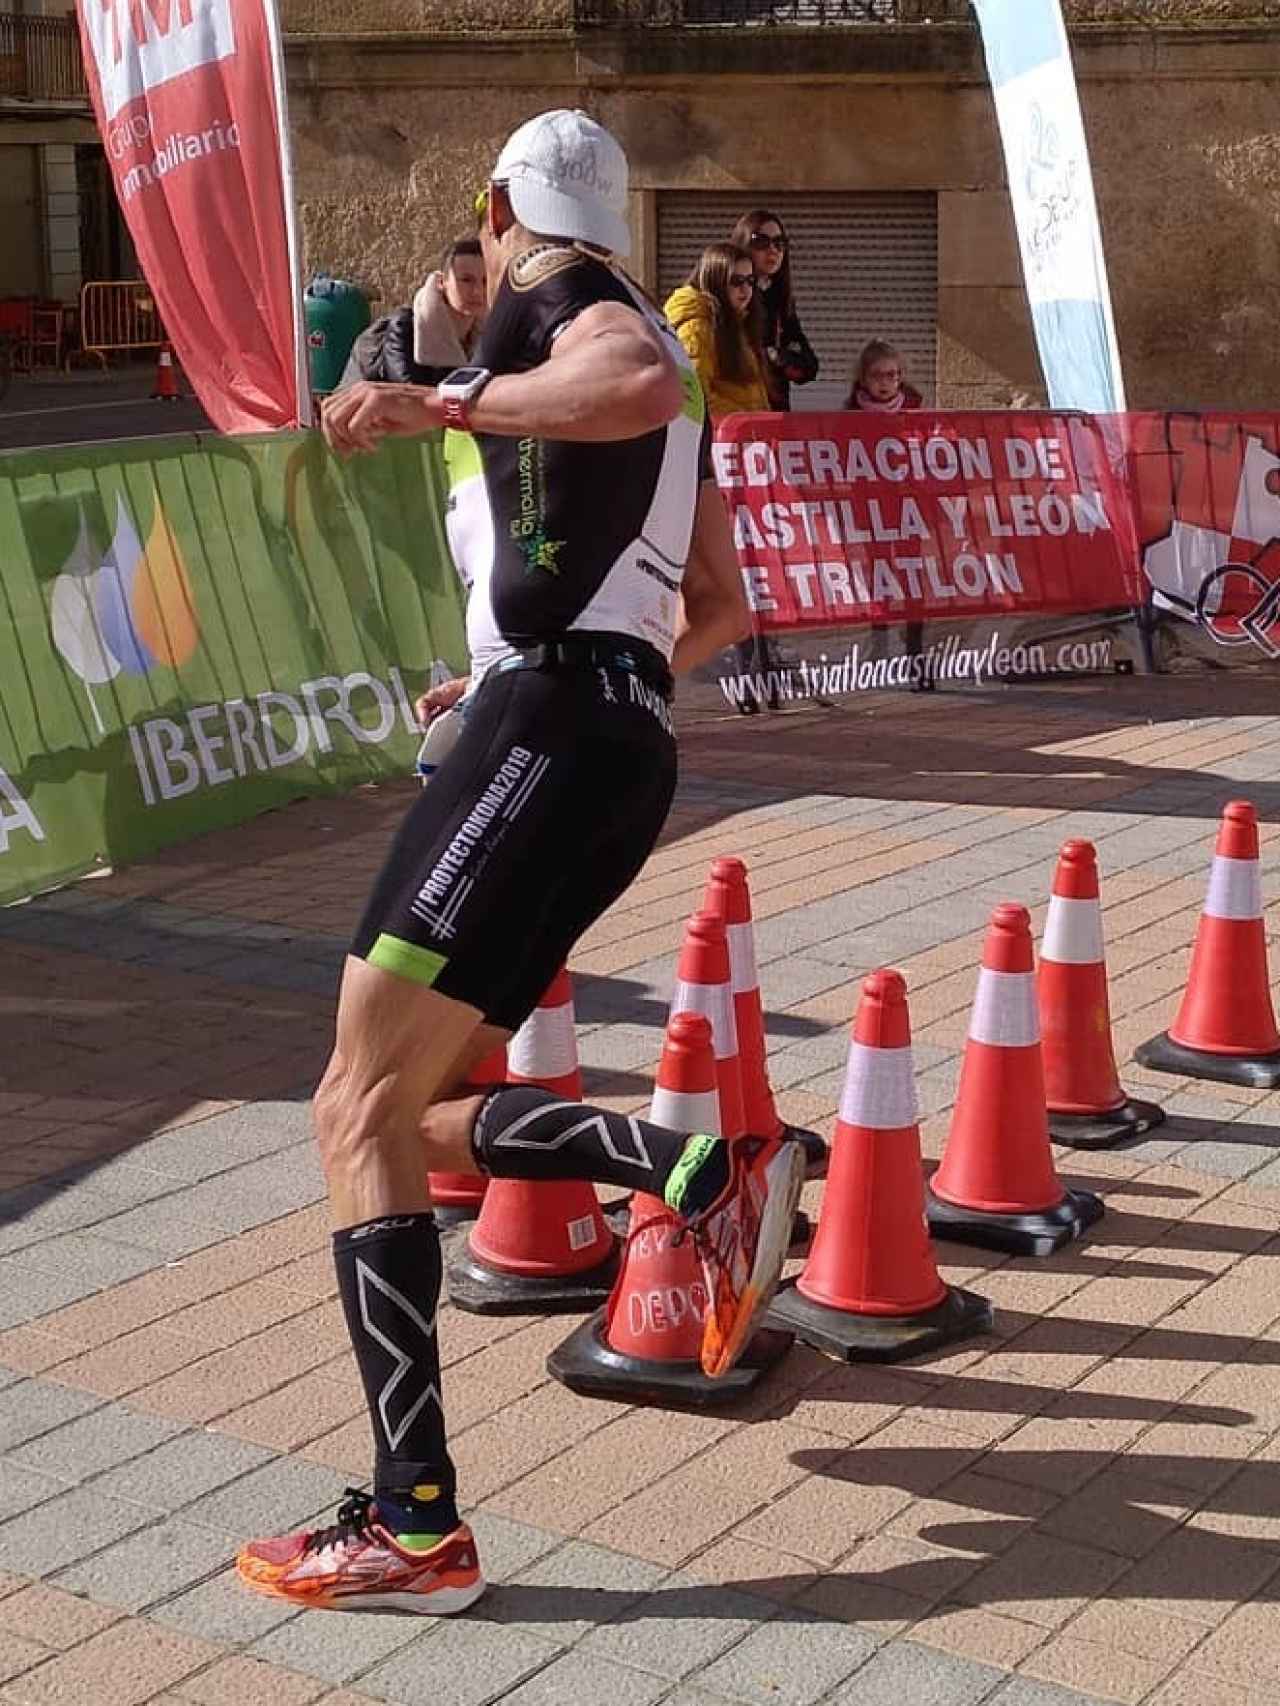 Gustavo Rodríguez en el campeonato de España de duatlón. Foto: Instagram (@triatlonsp)